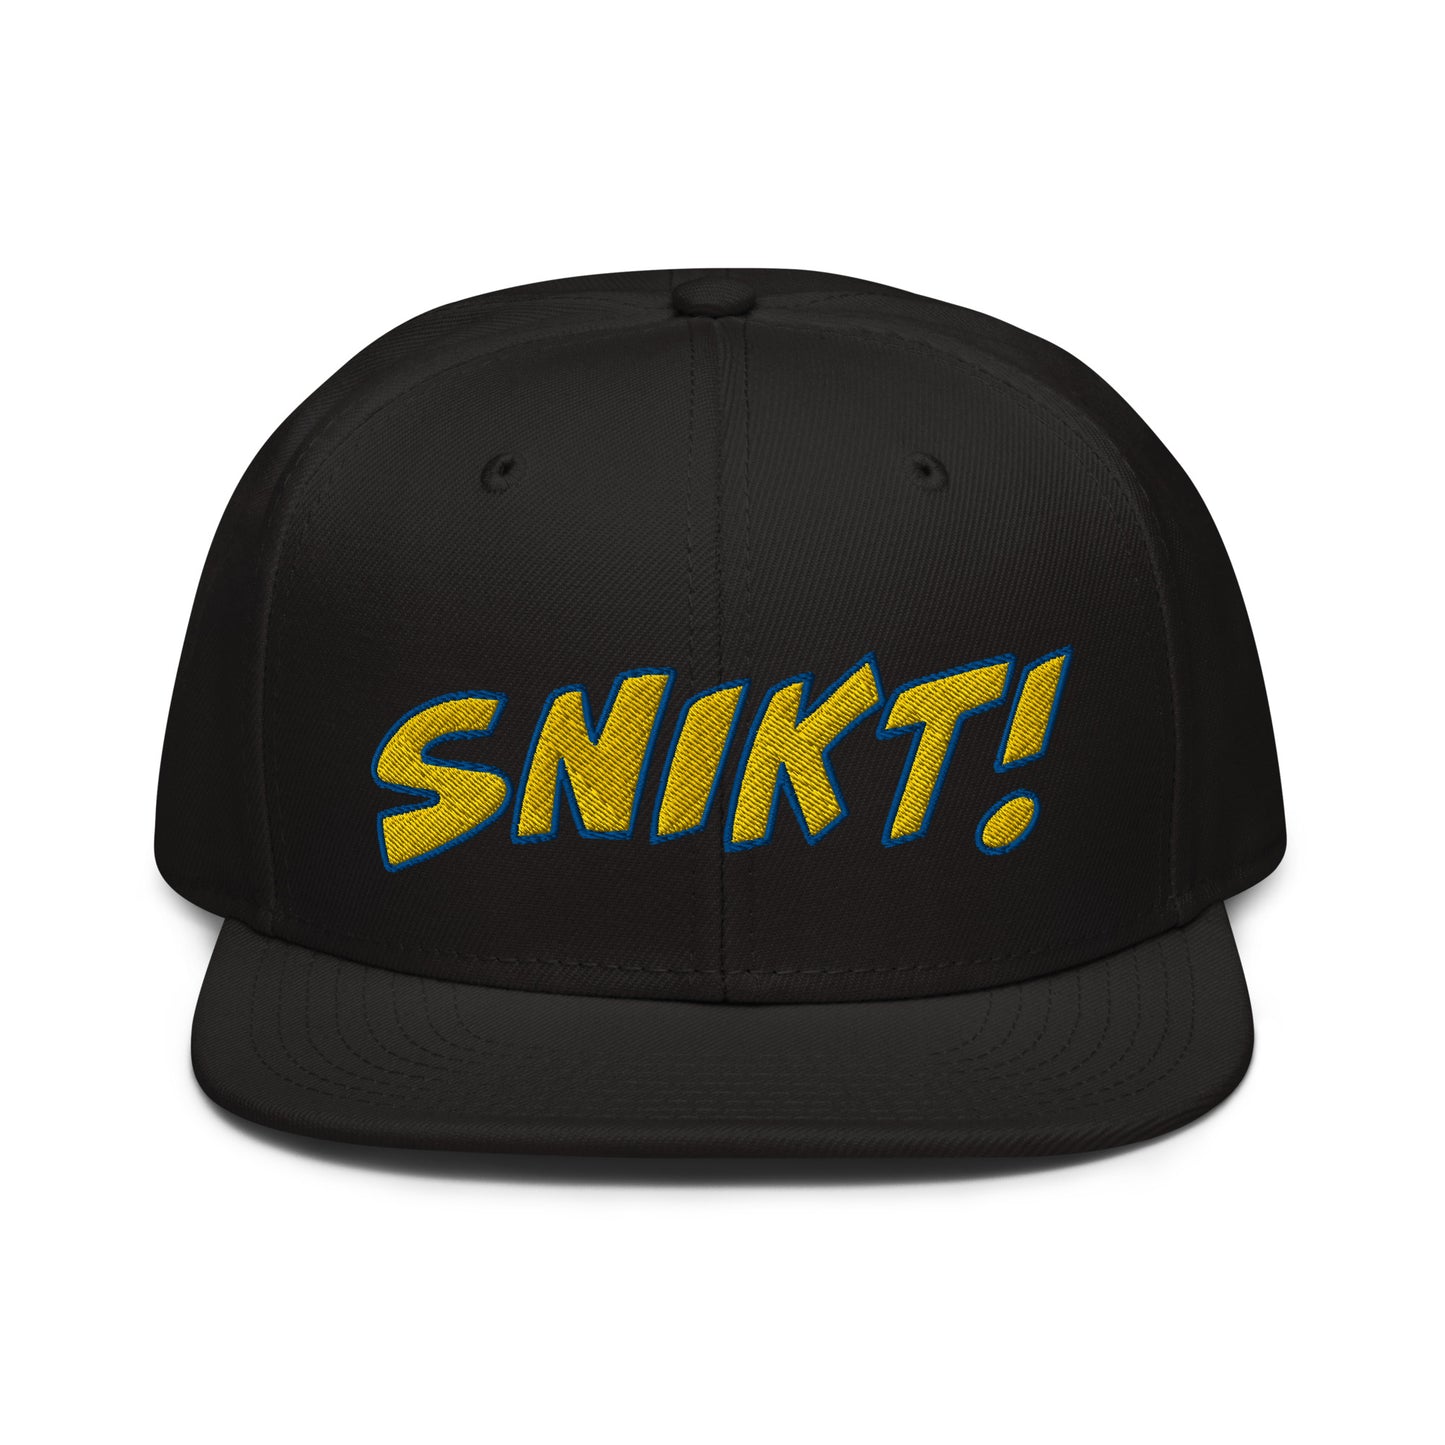 SNIKT! snapback hat